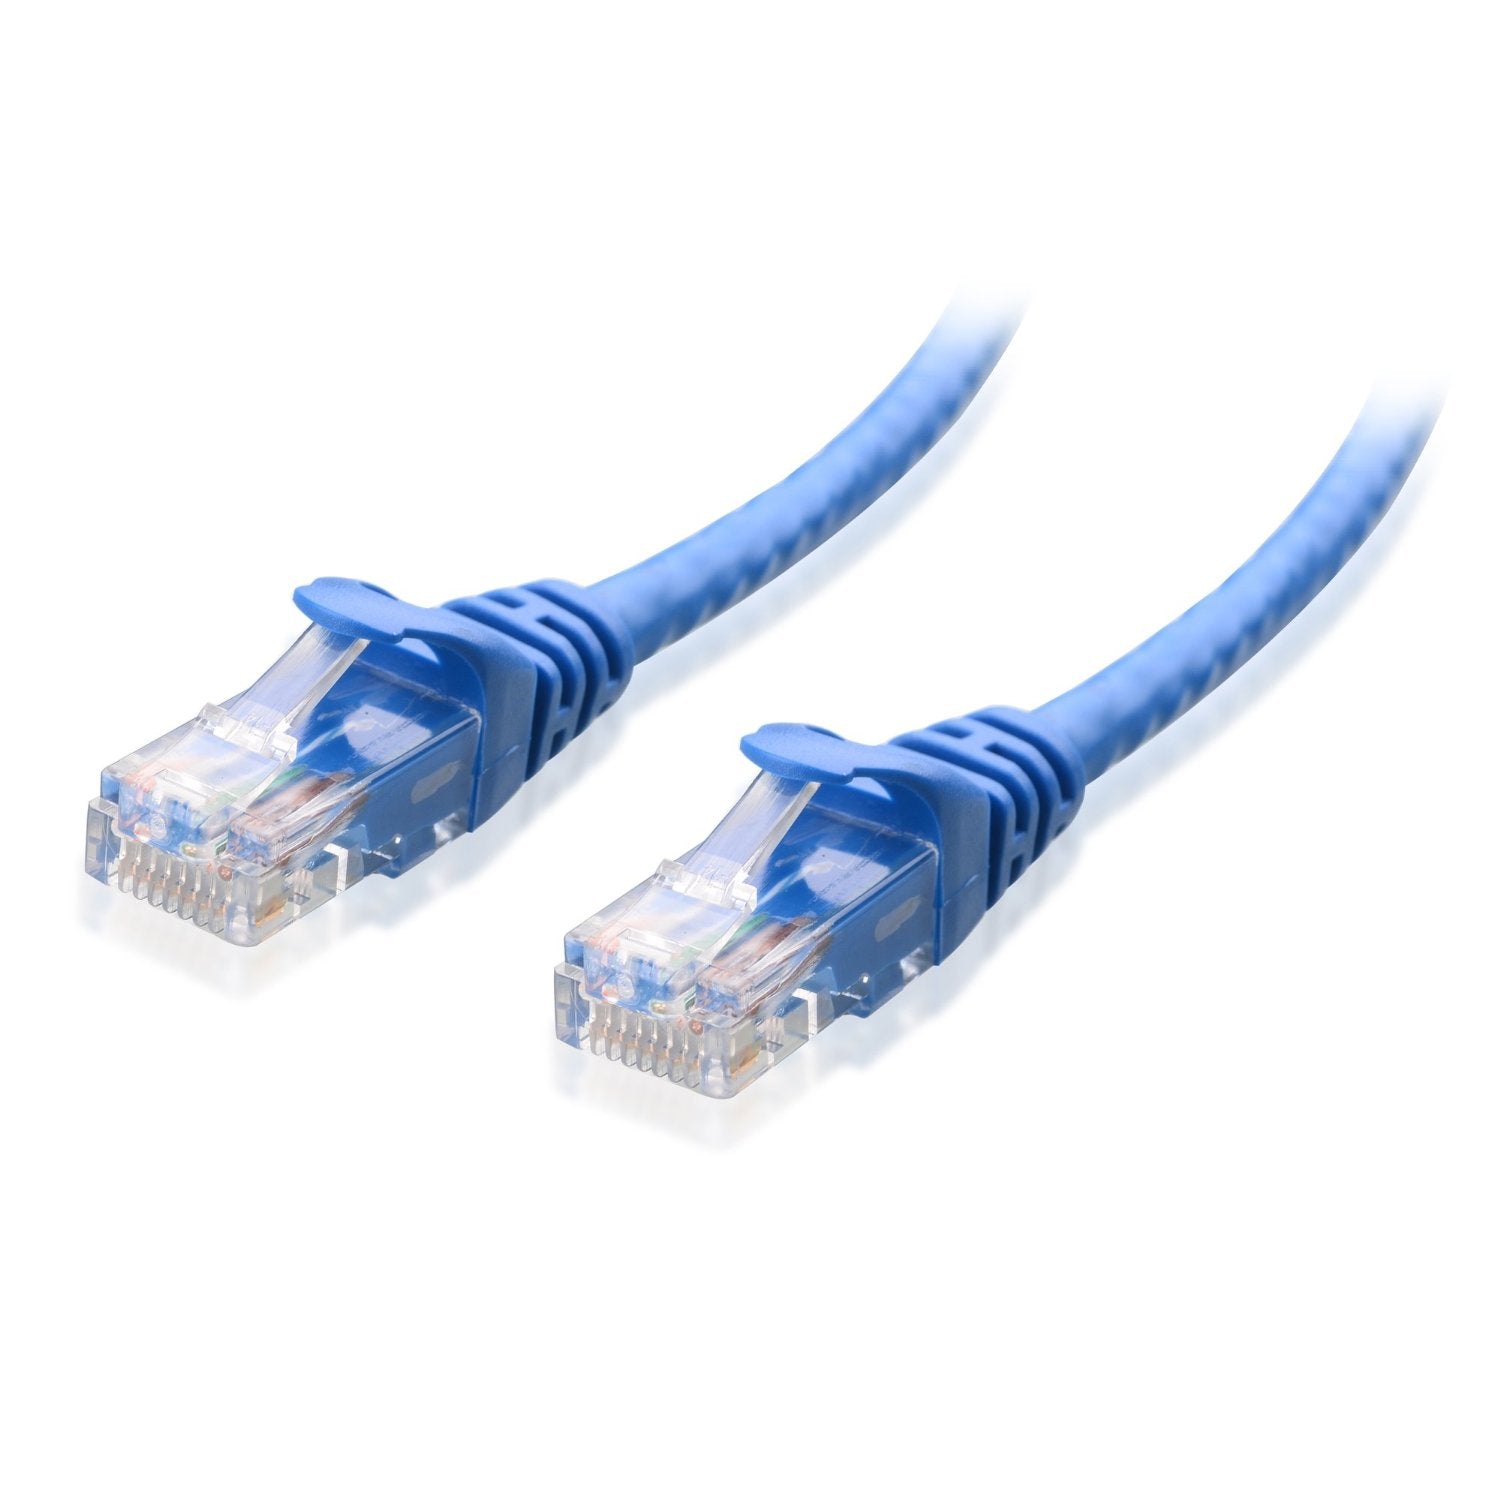 Astrotek CAT5e Cable 0.5m/50cm - Blue Color Premium RJ45 Ethernet Network LAN UTP Patch Cord 26AWG CU Jacket